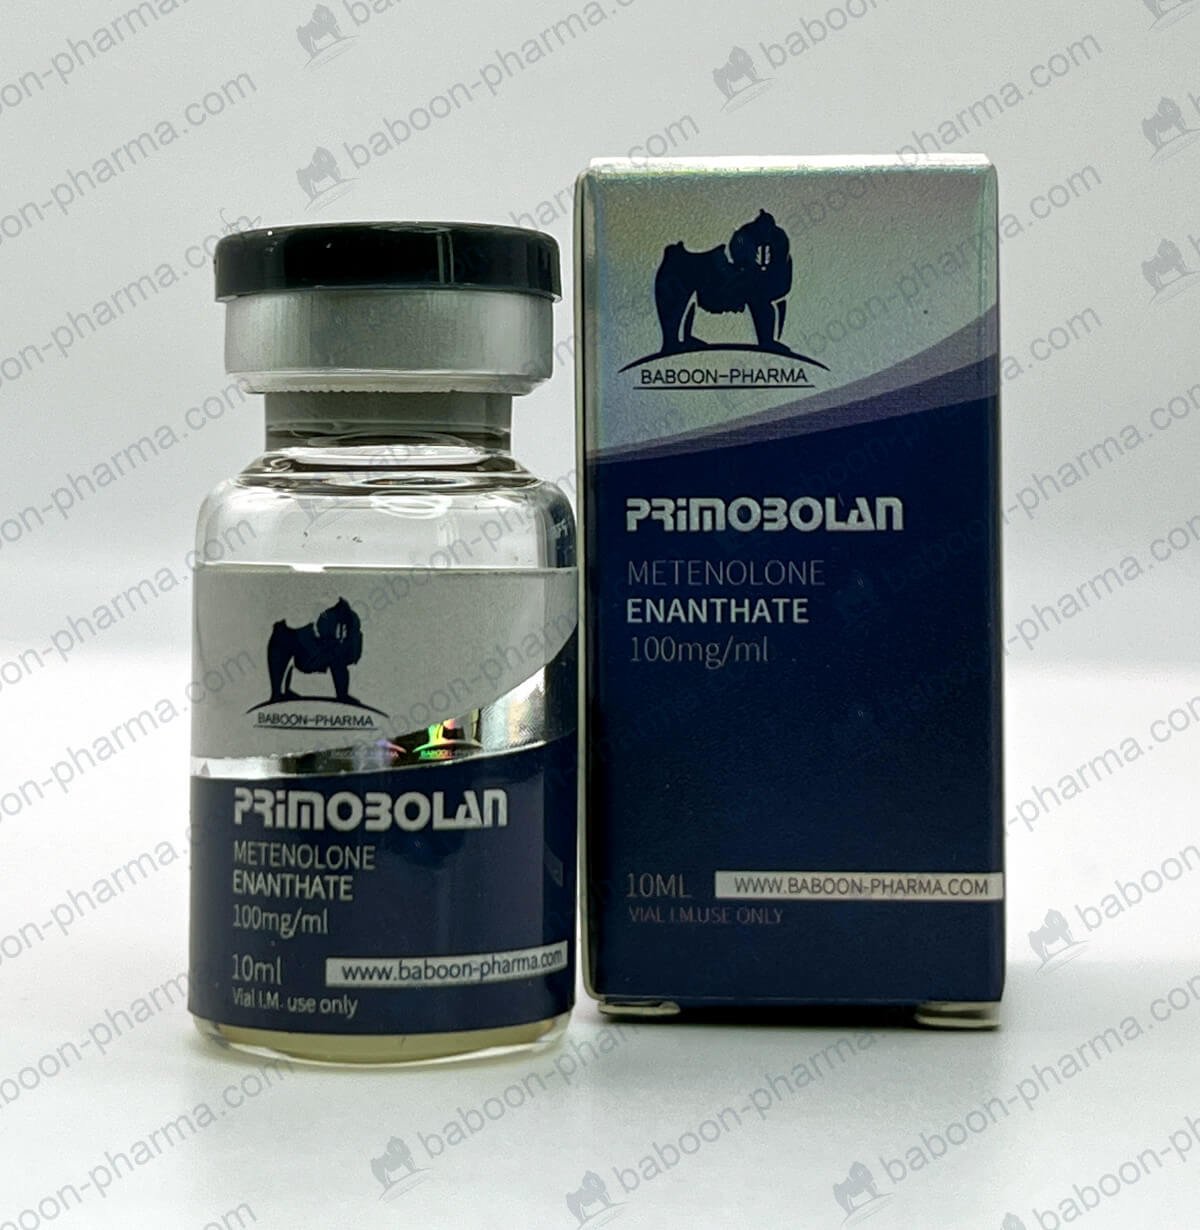 Pavian-Pharma-Öl_Primobolan_1